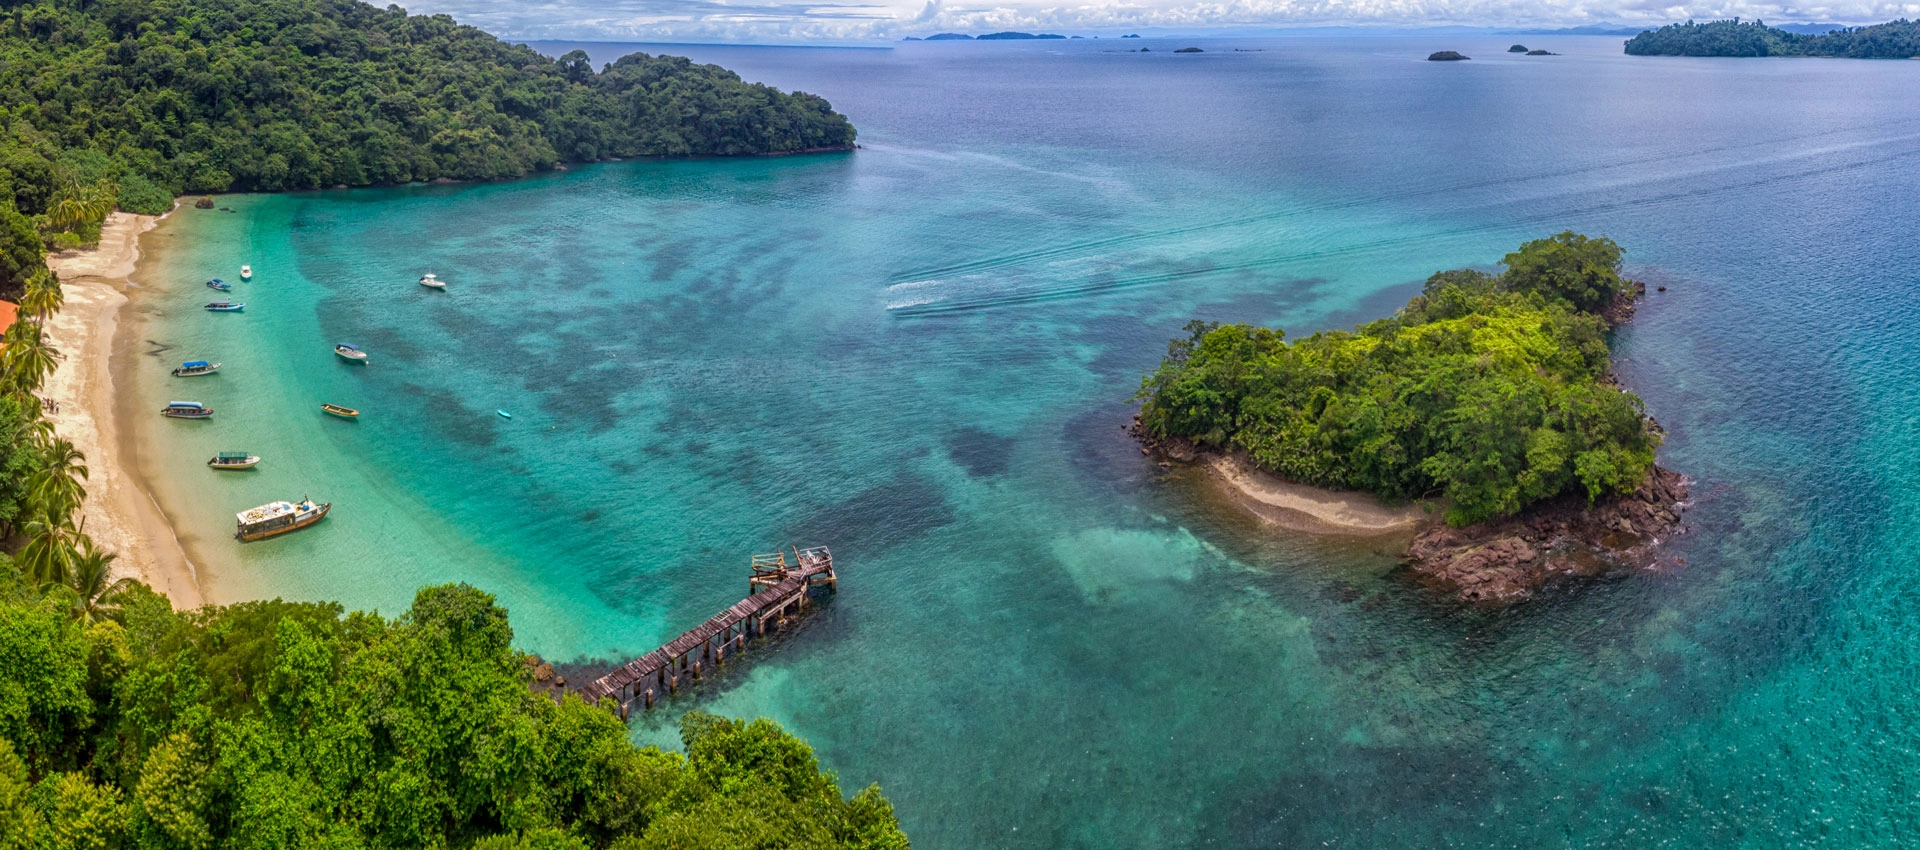  Isla de Coiba  strand - Panamian Pacific Coast